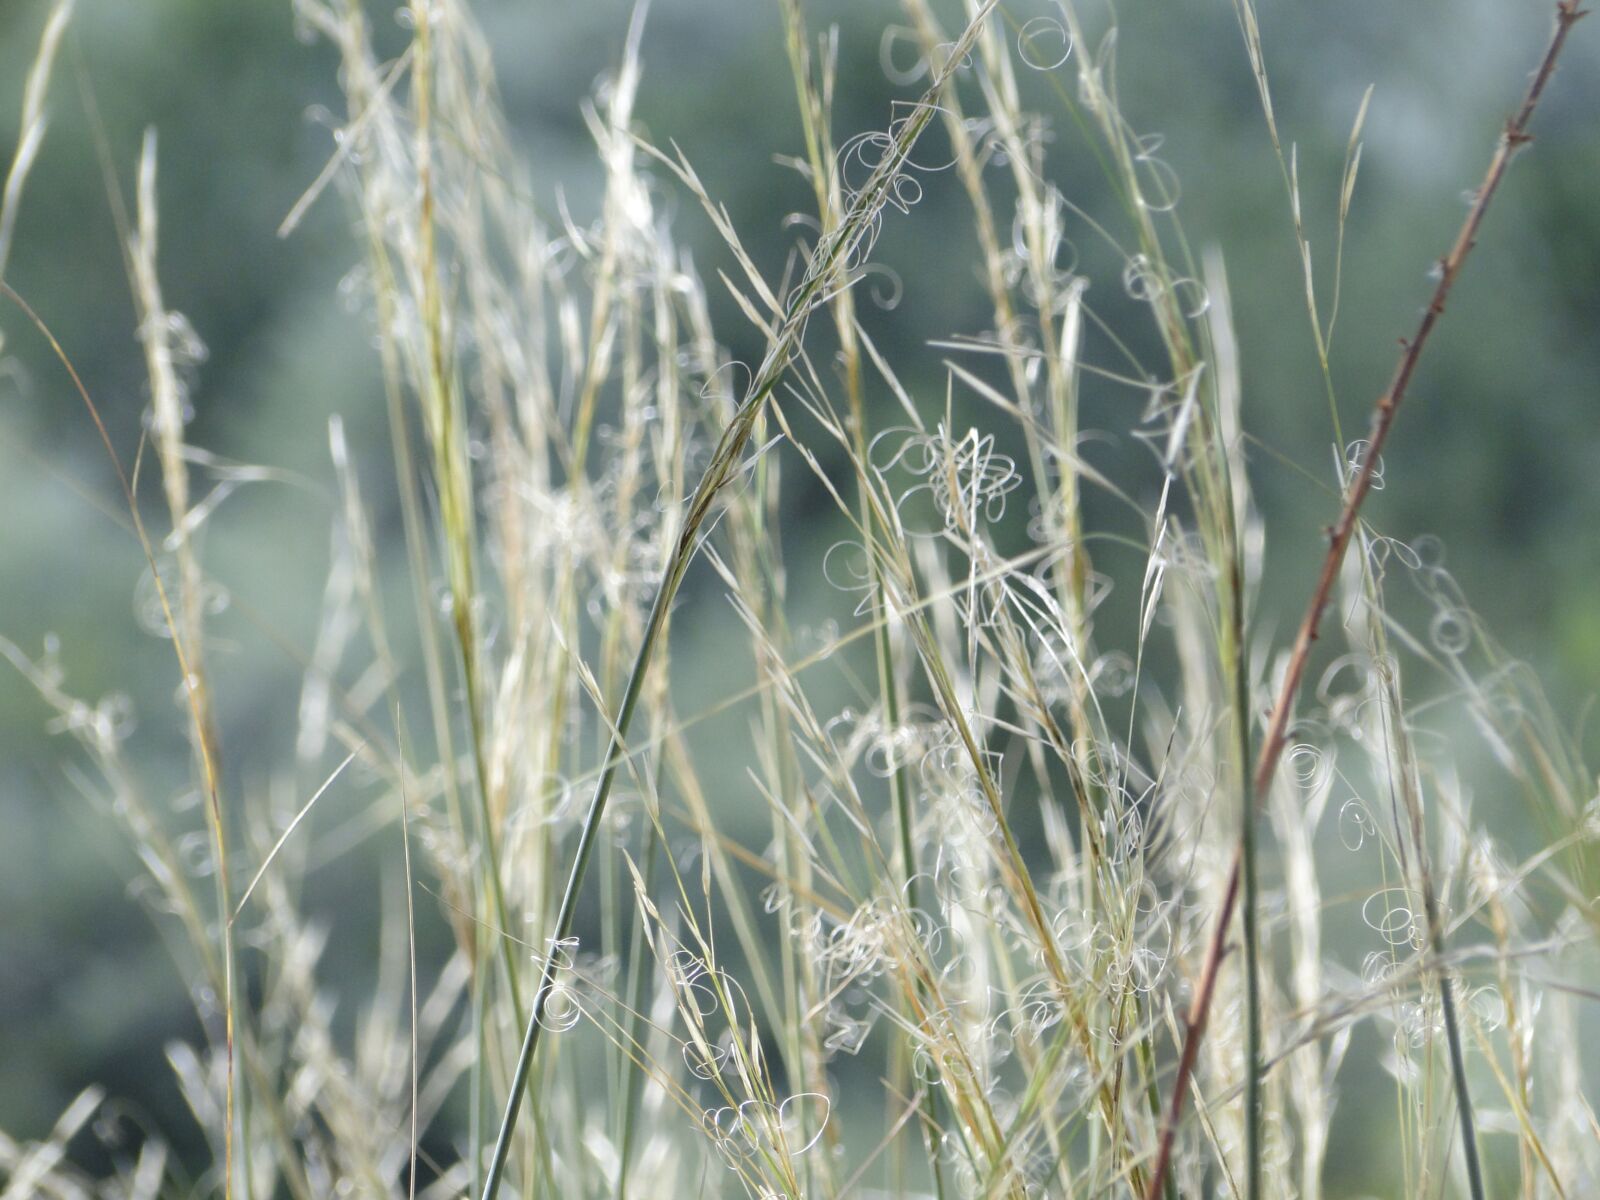 Sony Cyber-shot DSC-HX1 sample photo. Nature, grass, landscape photography